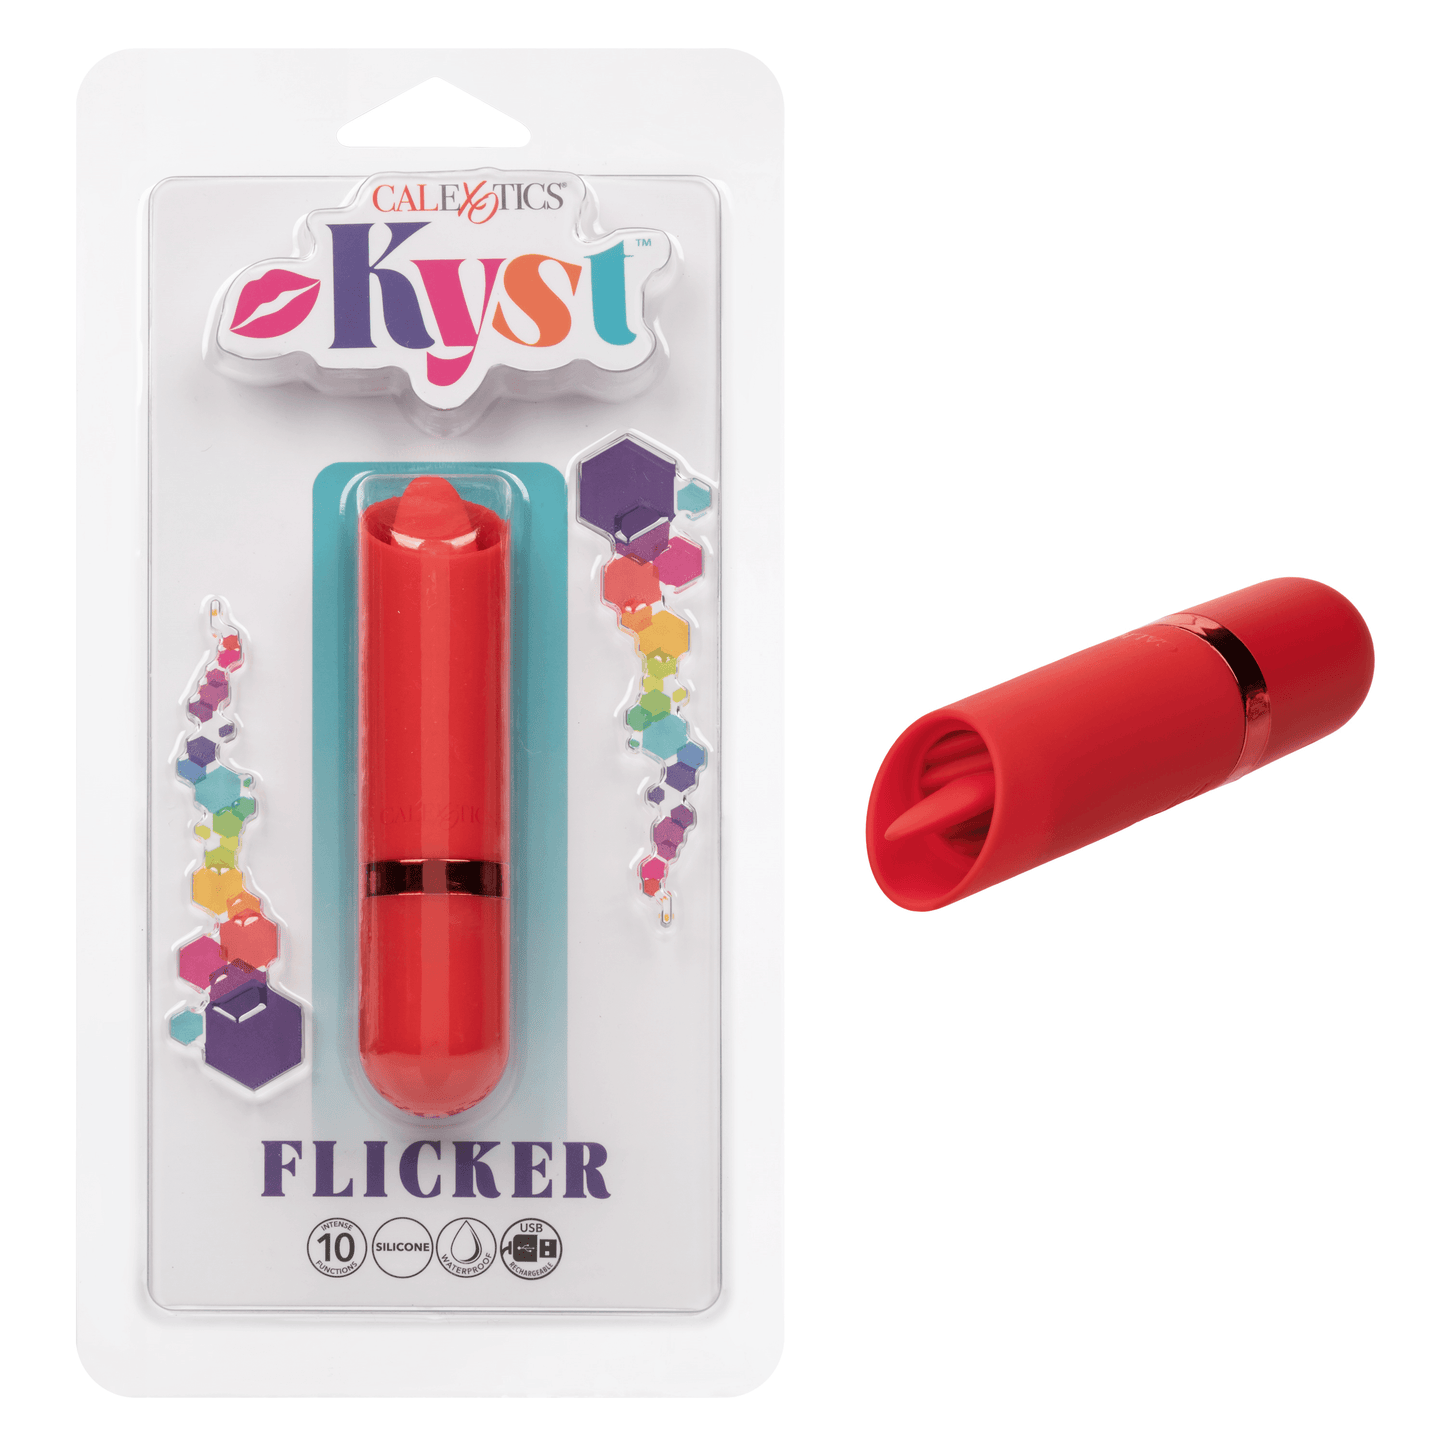 Kyst Flicker - Take A Peek